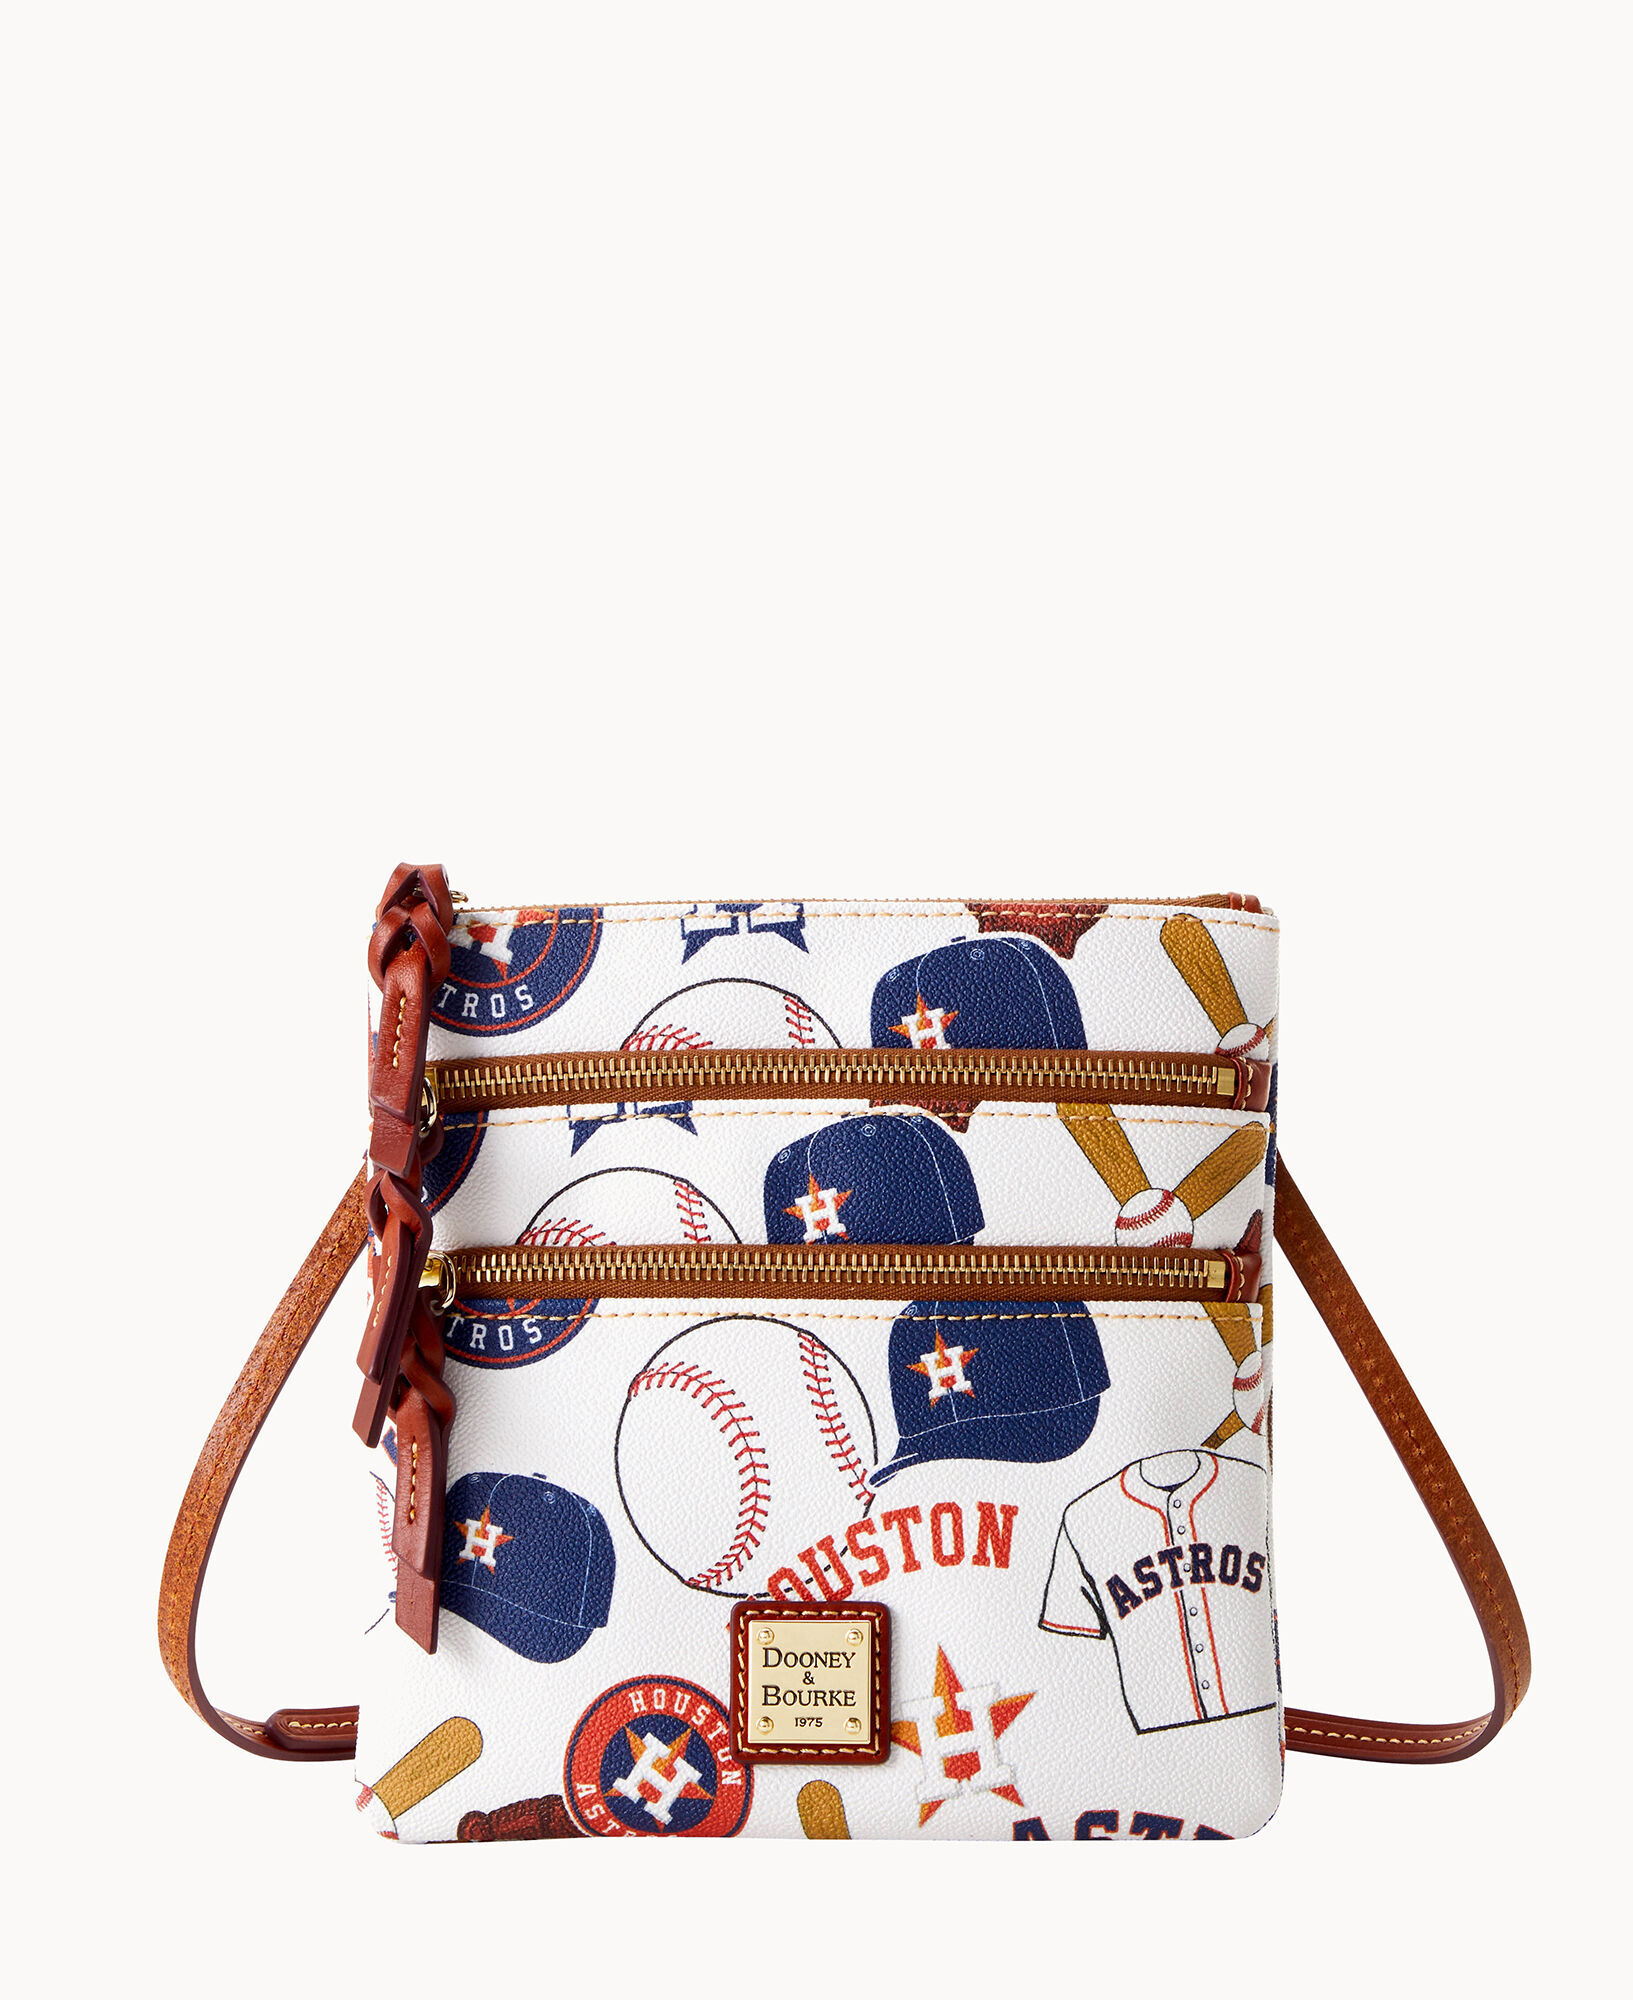 Dooney & Bourke MLB Astros Shopper